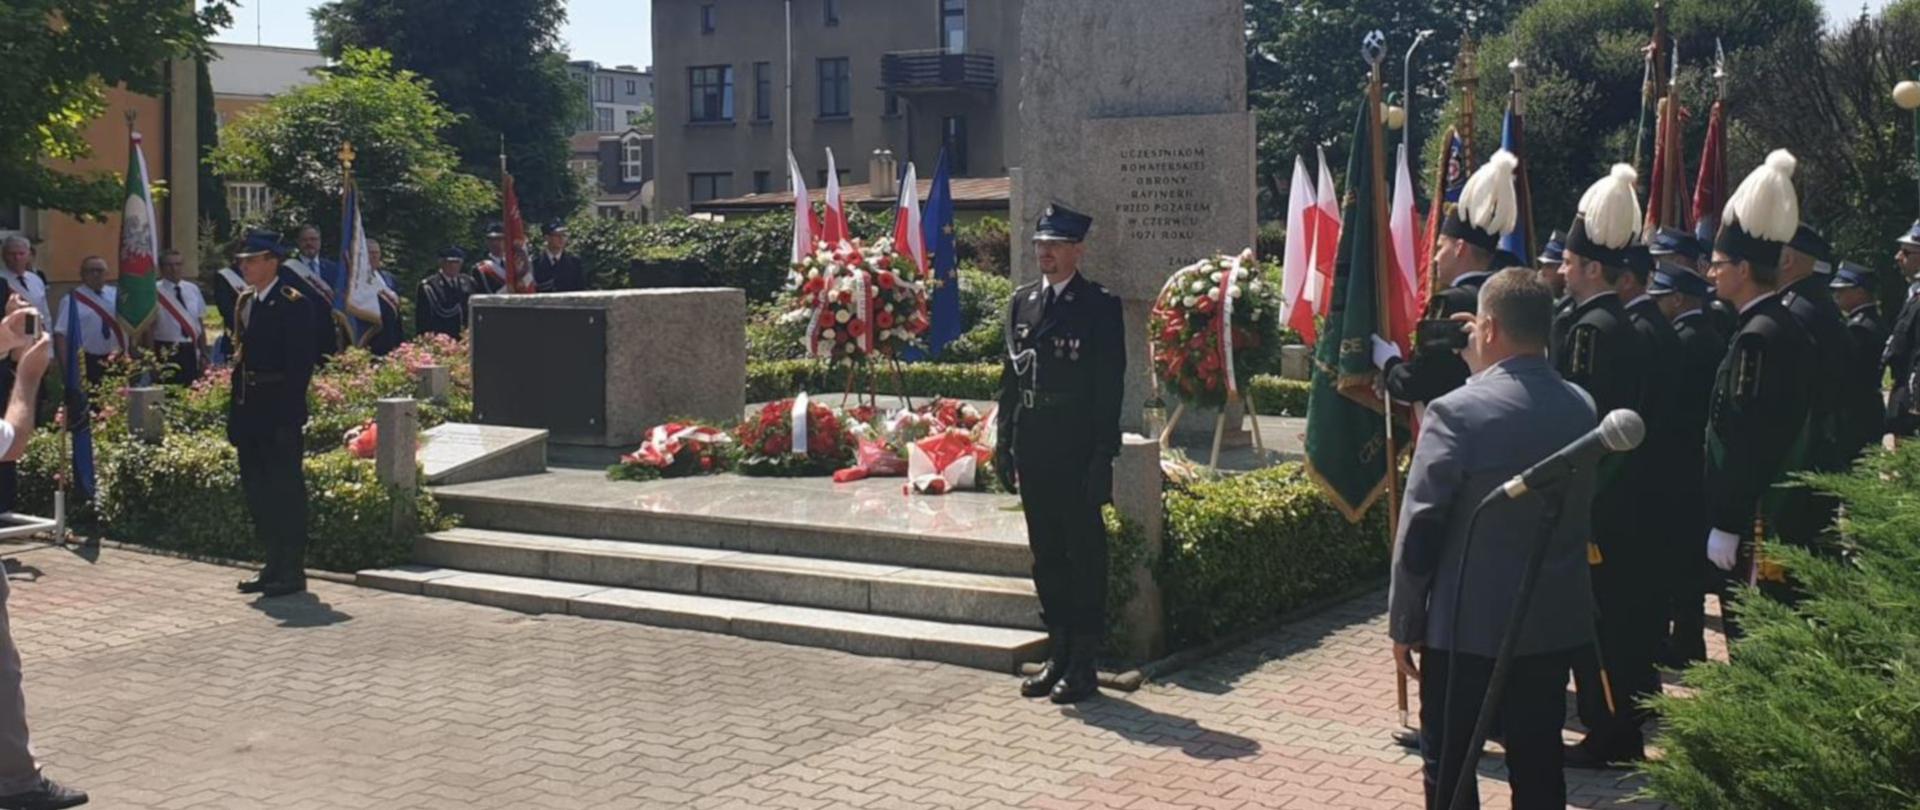 Na zdjęciu widać pomnik uczestników bohaterskiej obrony rafinerii w Czechowicach-Dziedzicach. Pod pomnikiem wieńce, obok warta honorowa dwóch strażaków PSP i OSP